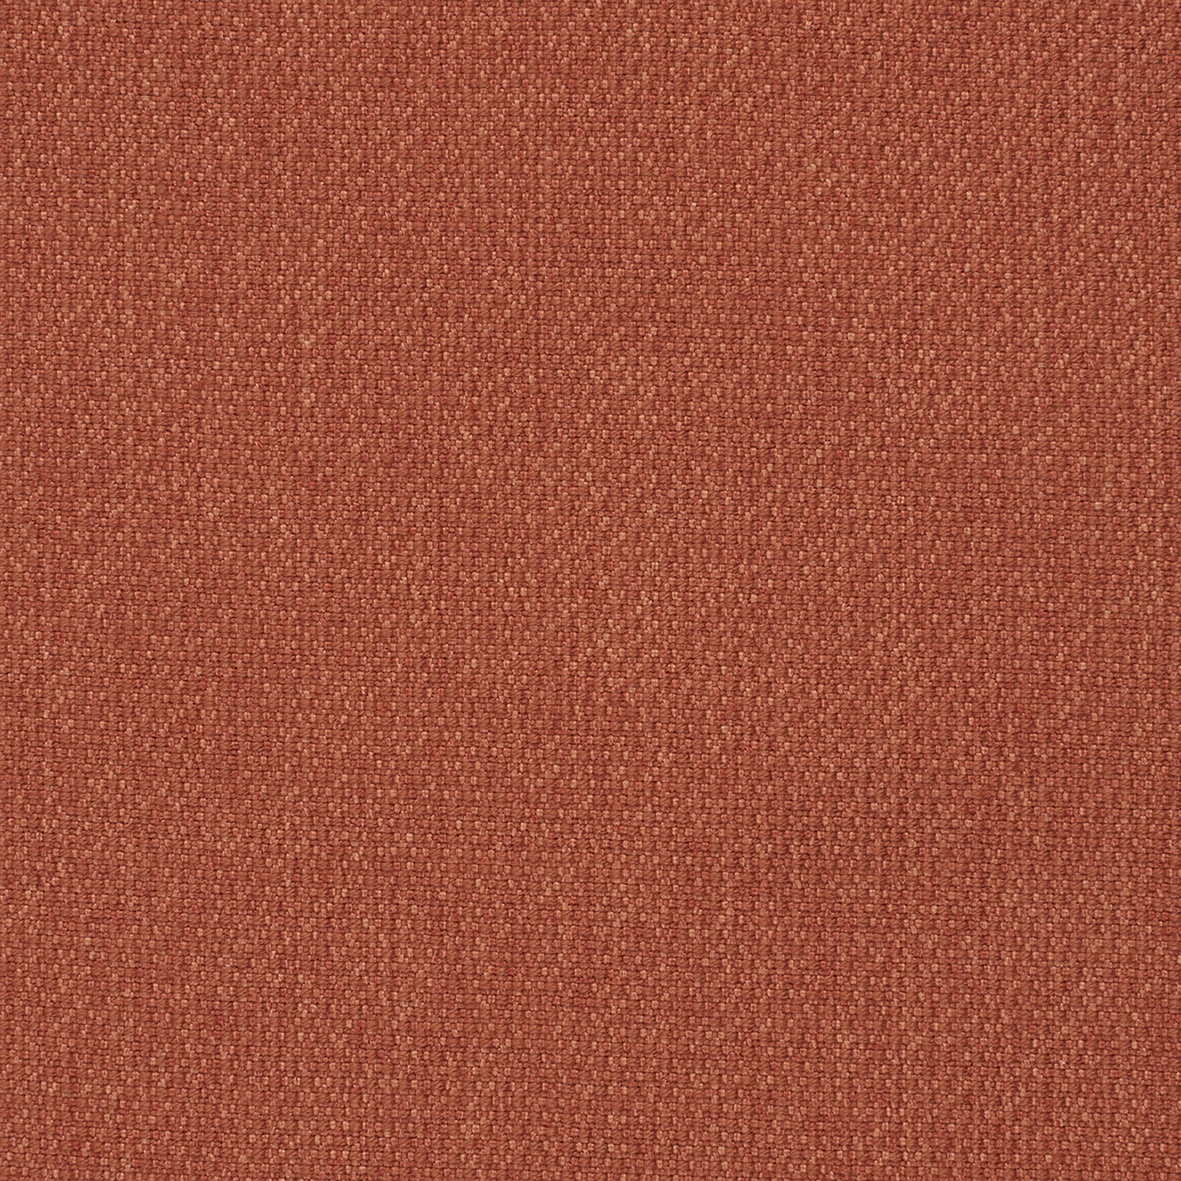 Fabric sample Dess 581 Argus Rust